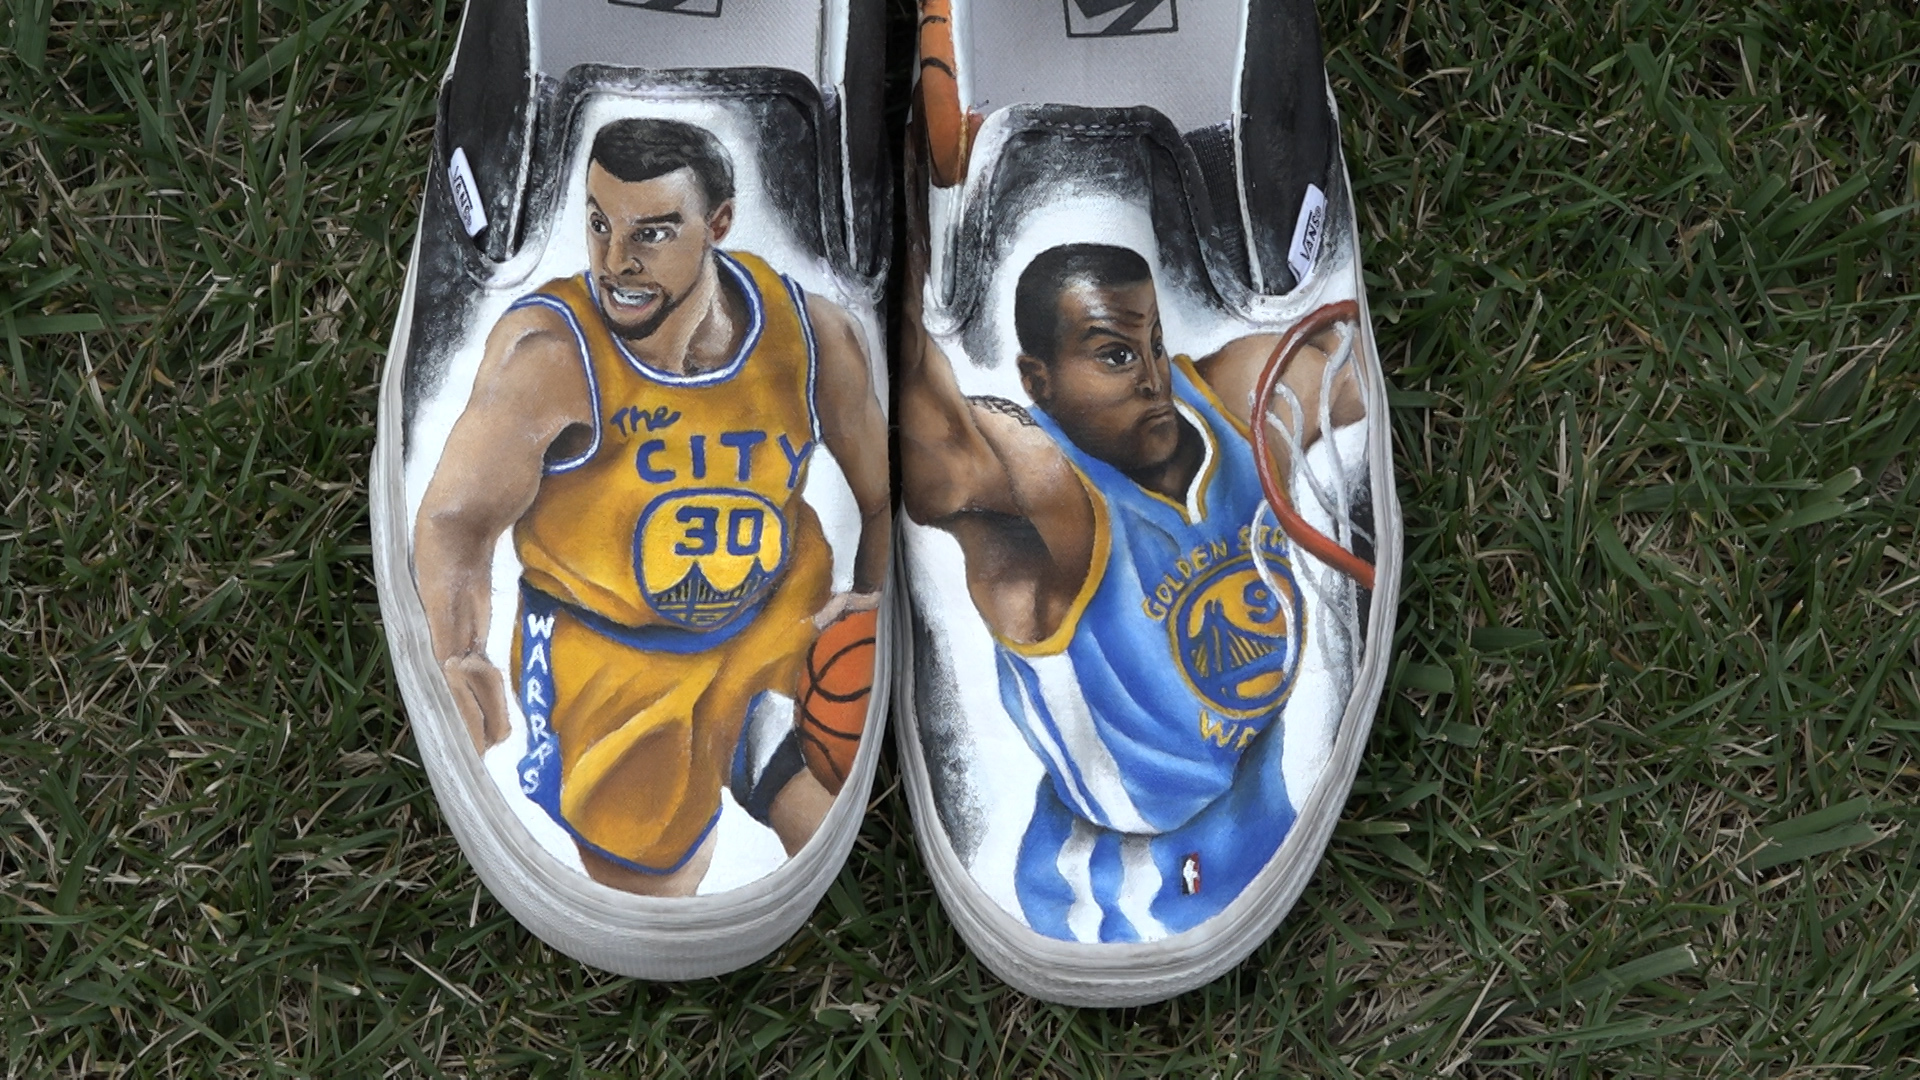 طابعة  واي فاي South San Jose artist creates custom shoes, art to give back to ... طابعة  واي فاي